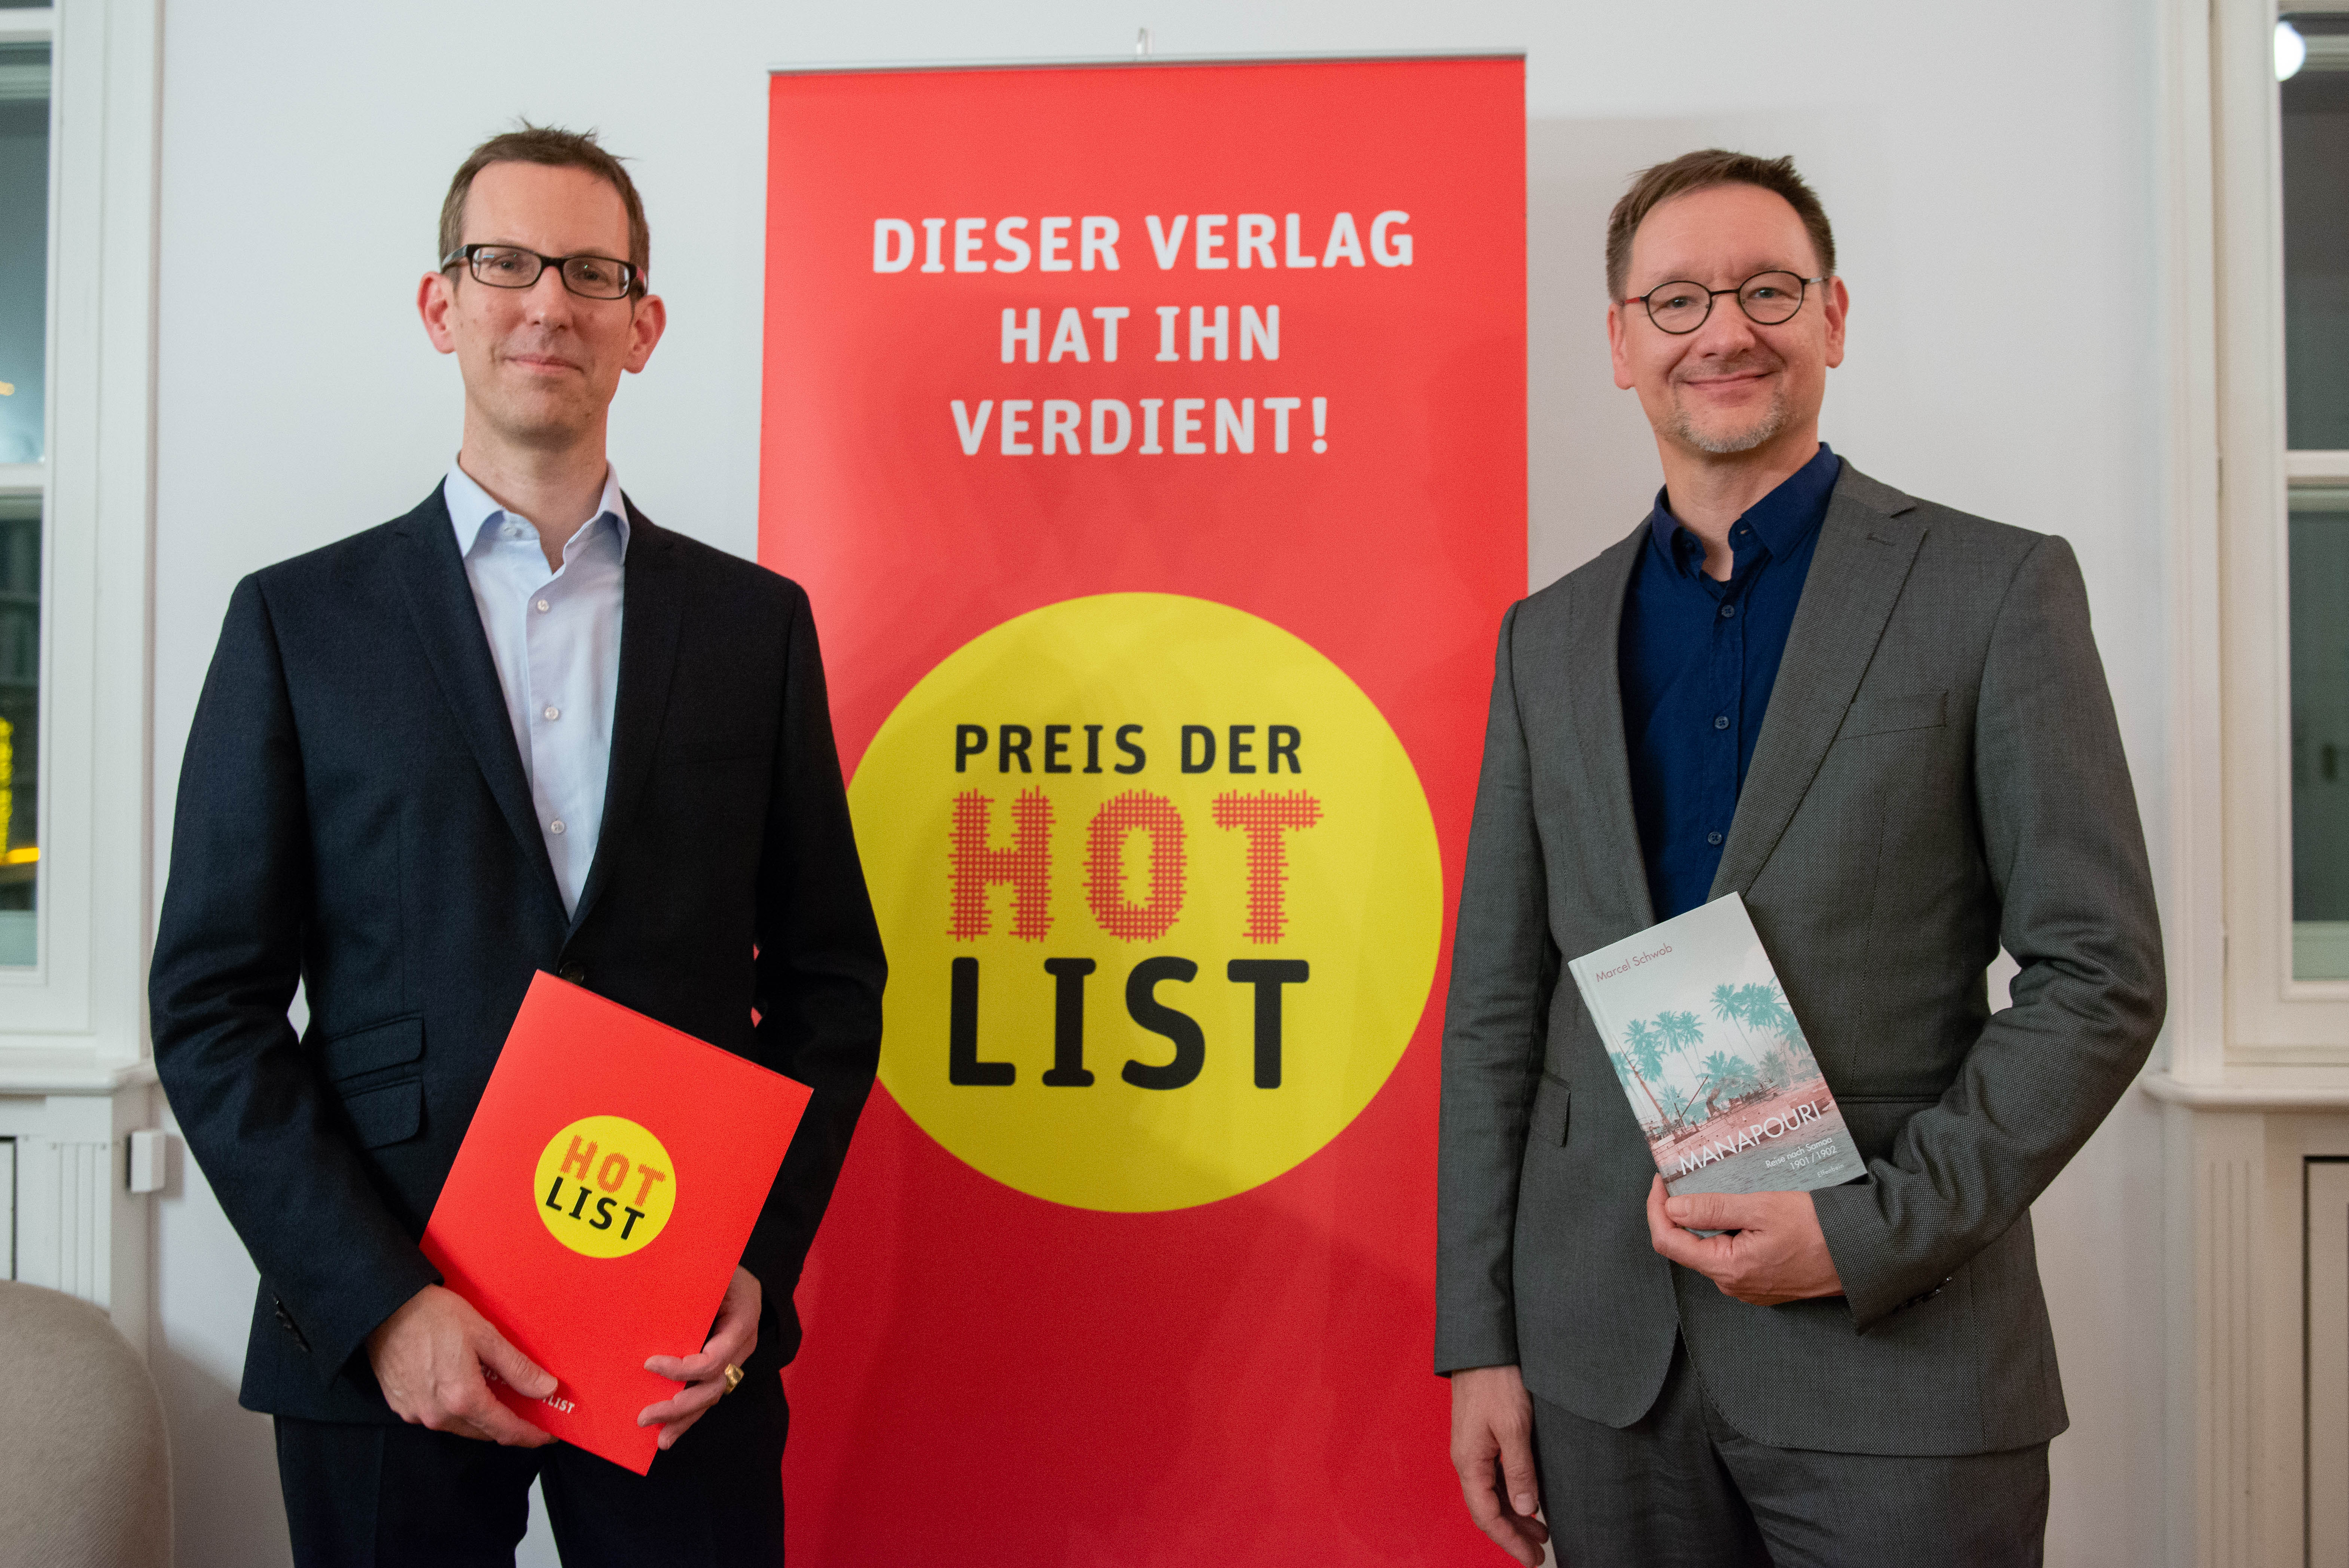 Elfenbein Verlag, Preis der Hotlist 2018